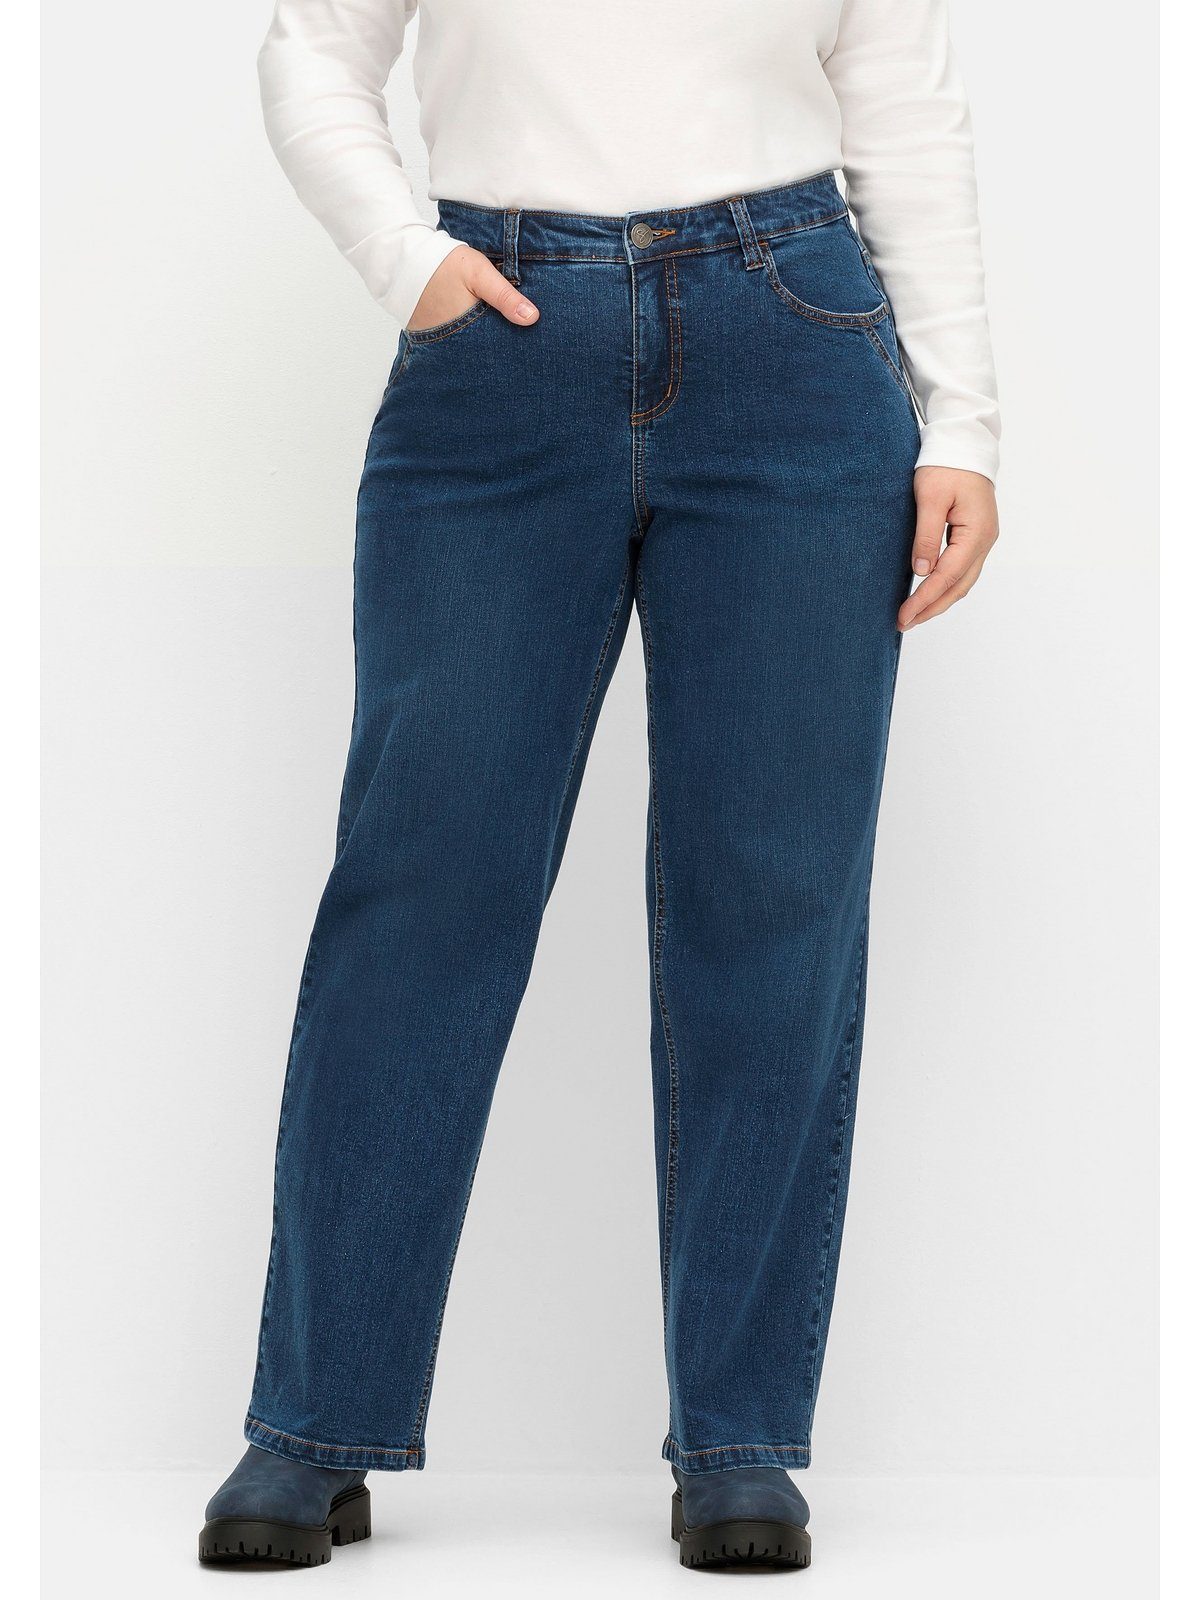 Waden Große Weite ELLA Denim Jeans Oberschenkel kräftige blue und dark Sheego für Größen